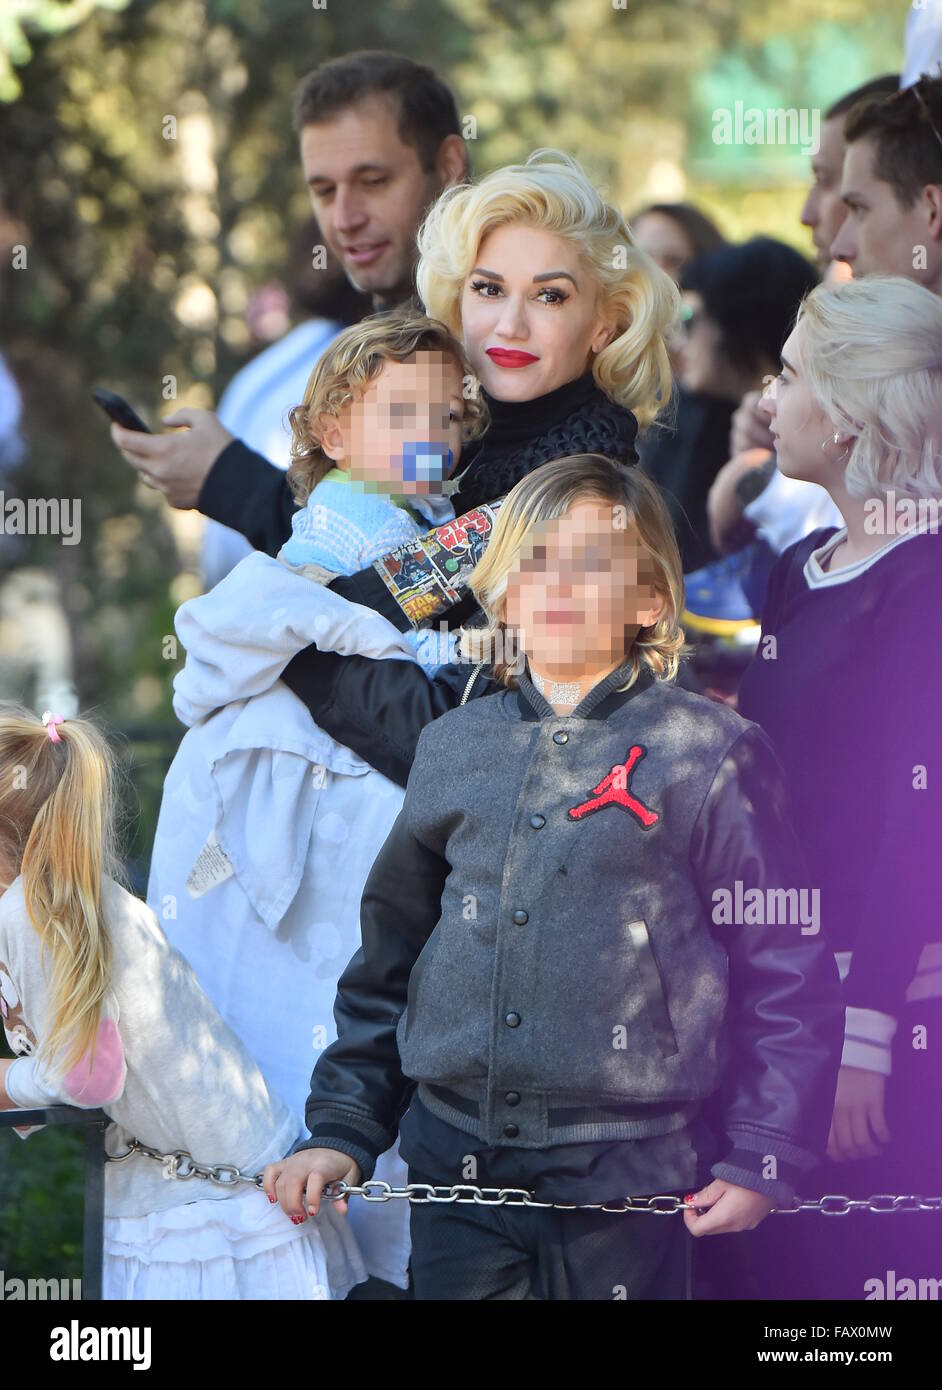 Gwen Stefani bénéficie d'un jour Parc Disneyland avec ses trois fils à Anaheim, Californie. En vedette : Gwen Stefani, Kingston Rossdale Rossdale Apollo, où : Los Angeles, California, United States Quand : 27 Nov 2015 Banque D'Images